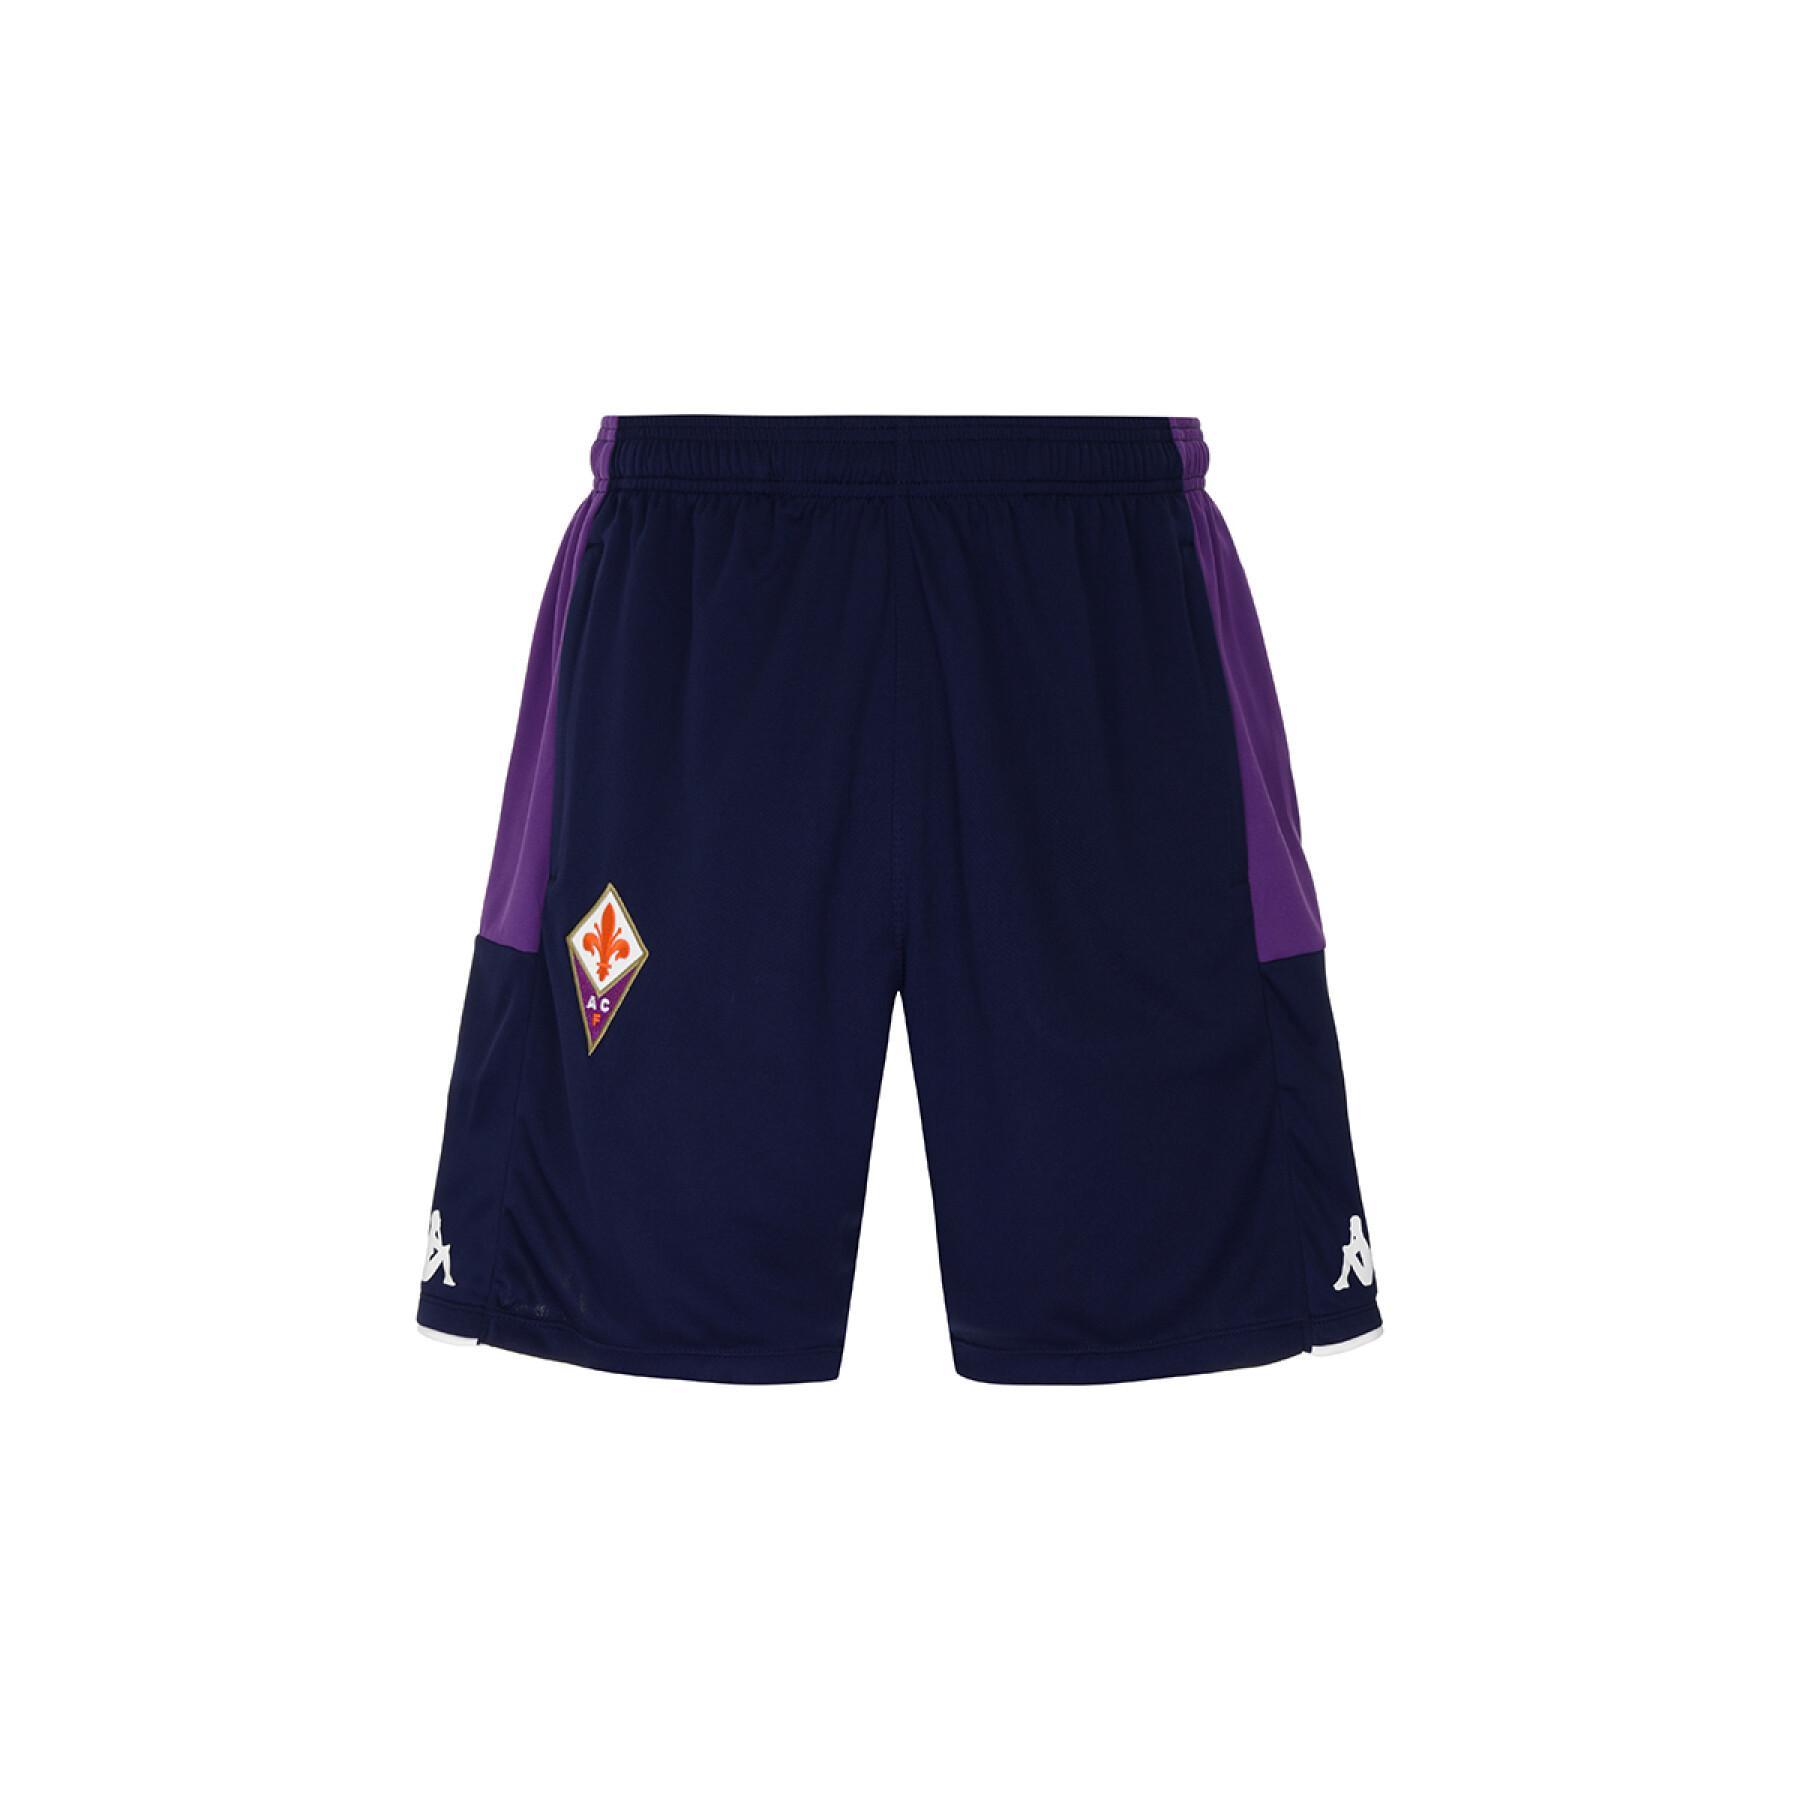 Kort Fiorentina AC 2021/22 ahorazip pro 5